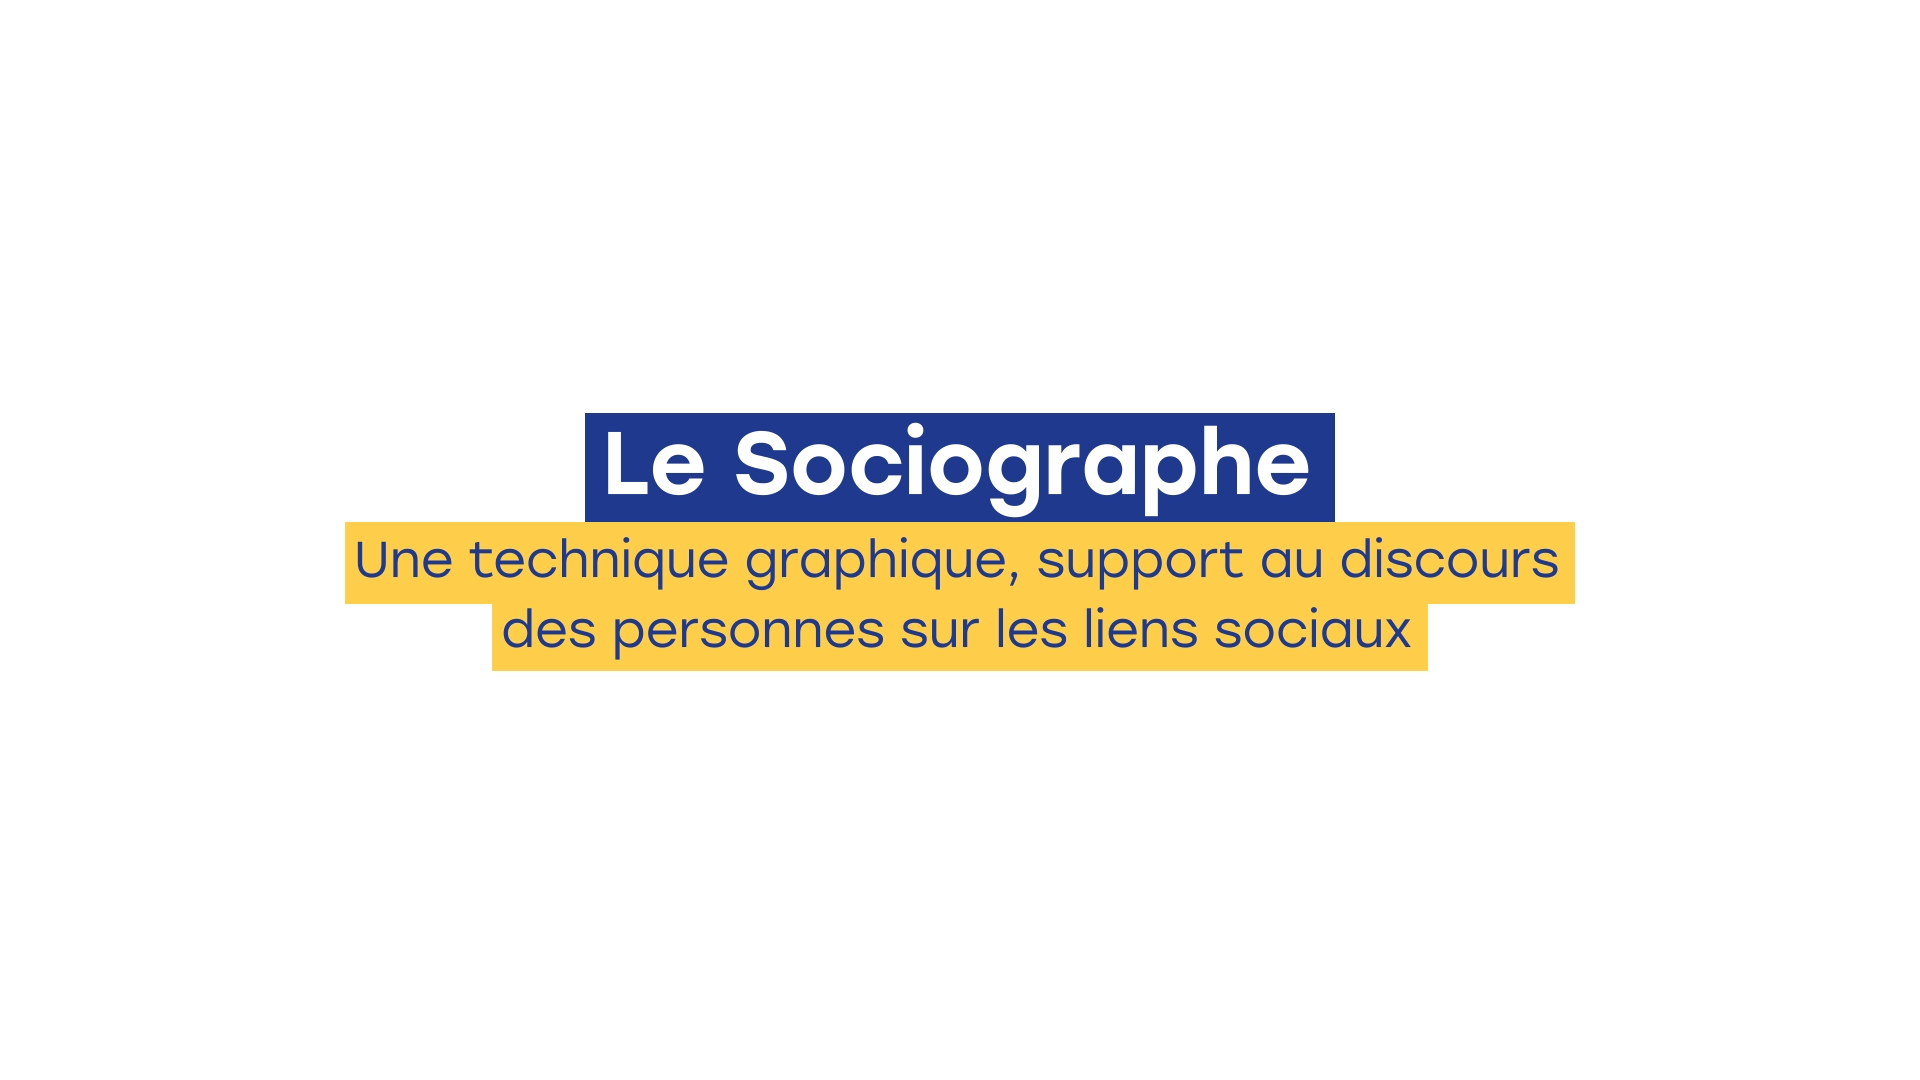 Le sociographe - une technique graphique, support au discours des personnes sur les liens sociaux